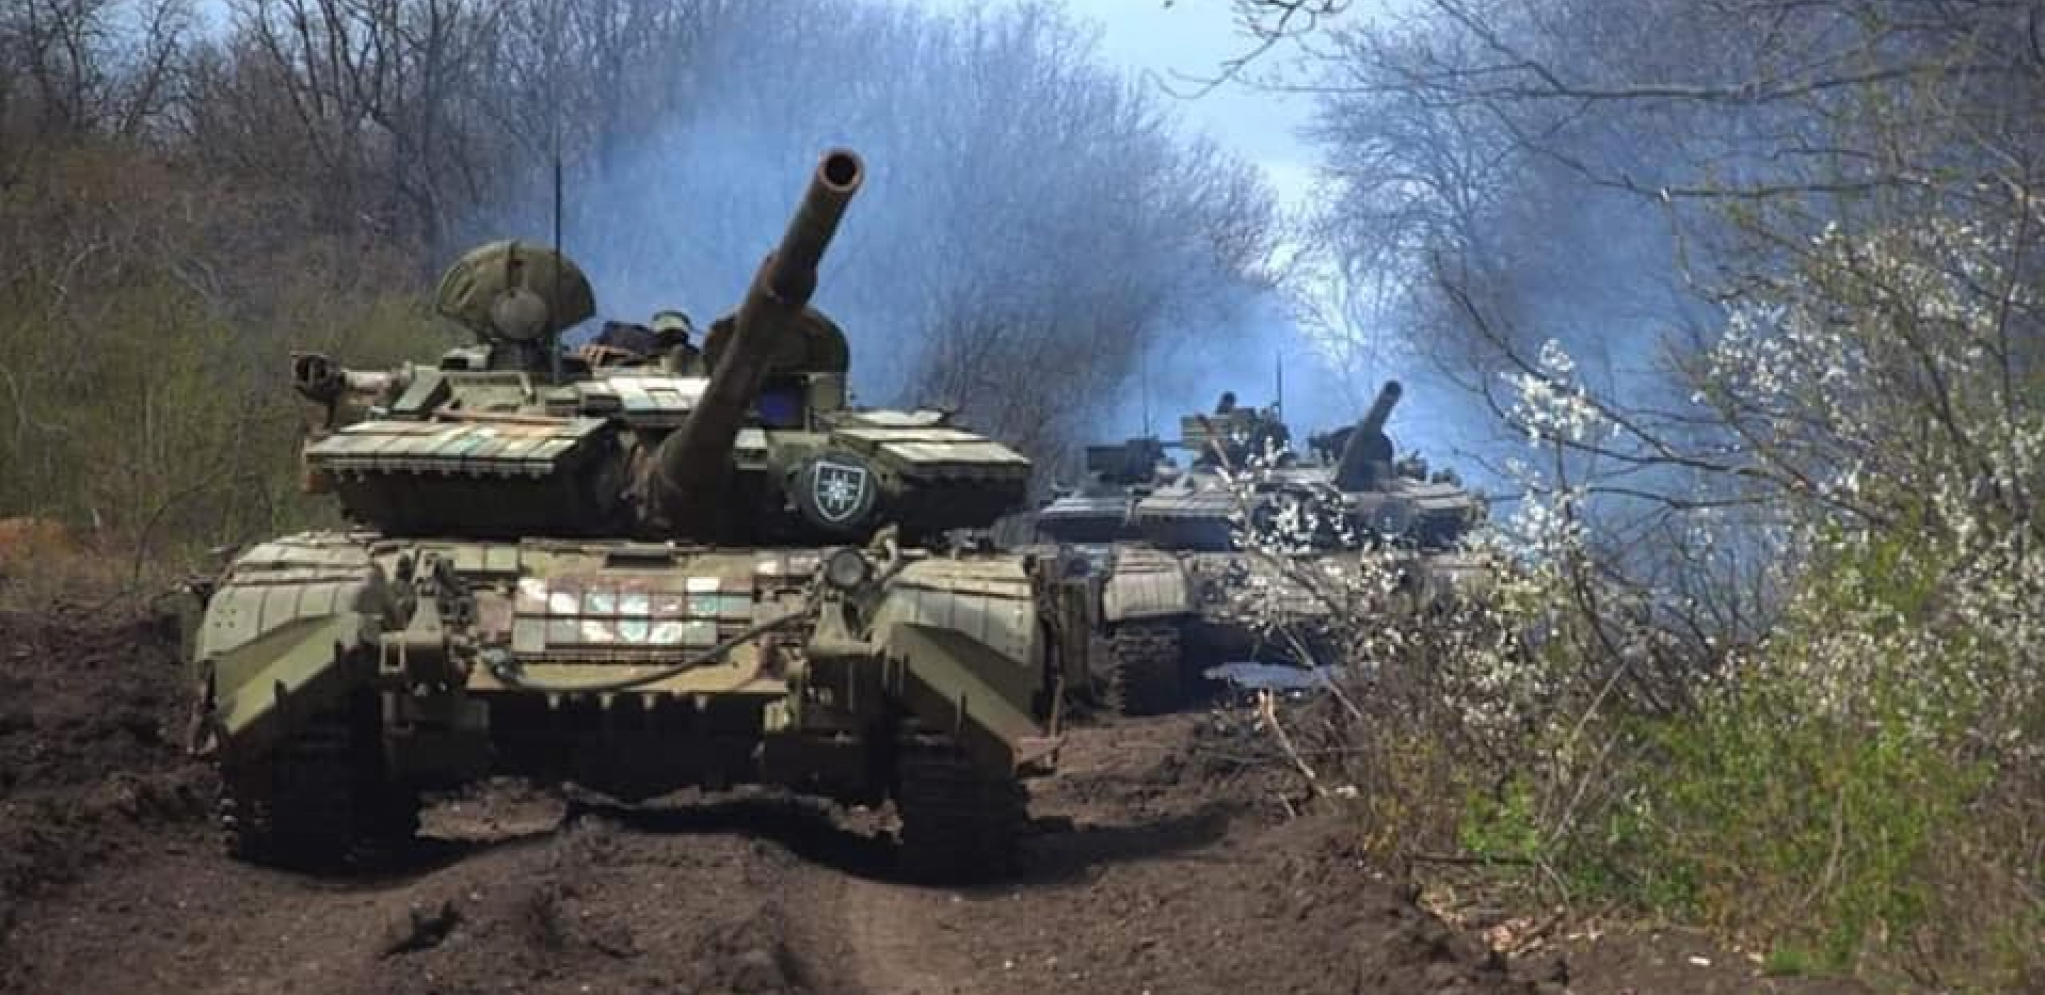 POSLEDNJI IZVEŠTAJ BRITANSKIH OBAVEŠTAJACA Besne borbe u Severodonjecku, ruske snage posle više nedelja napredovale kod Harkova